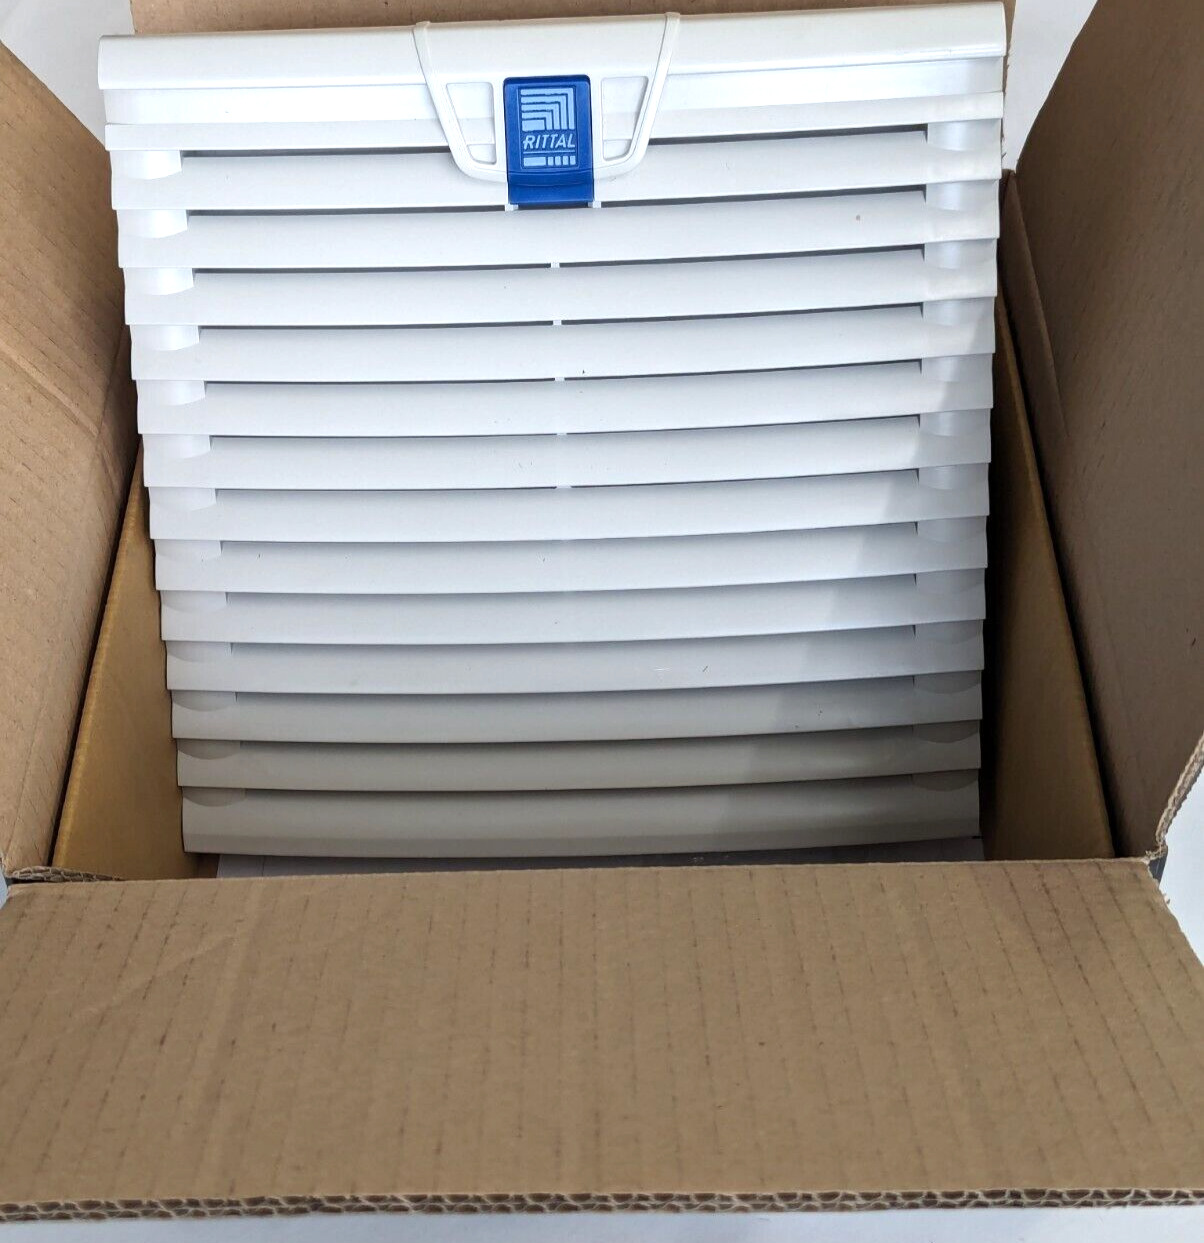 Rittal control cabinet fan, K2S165-AA17-05, radiator fan new original packaging